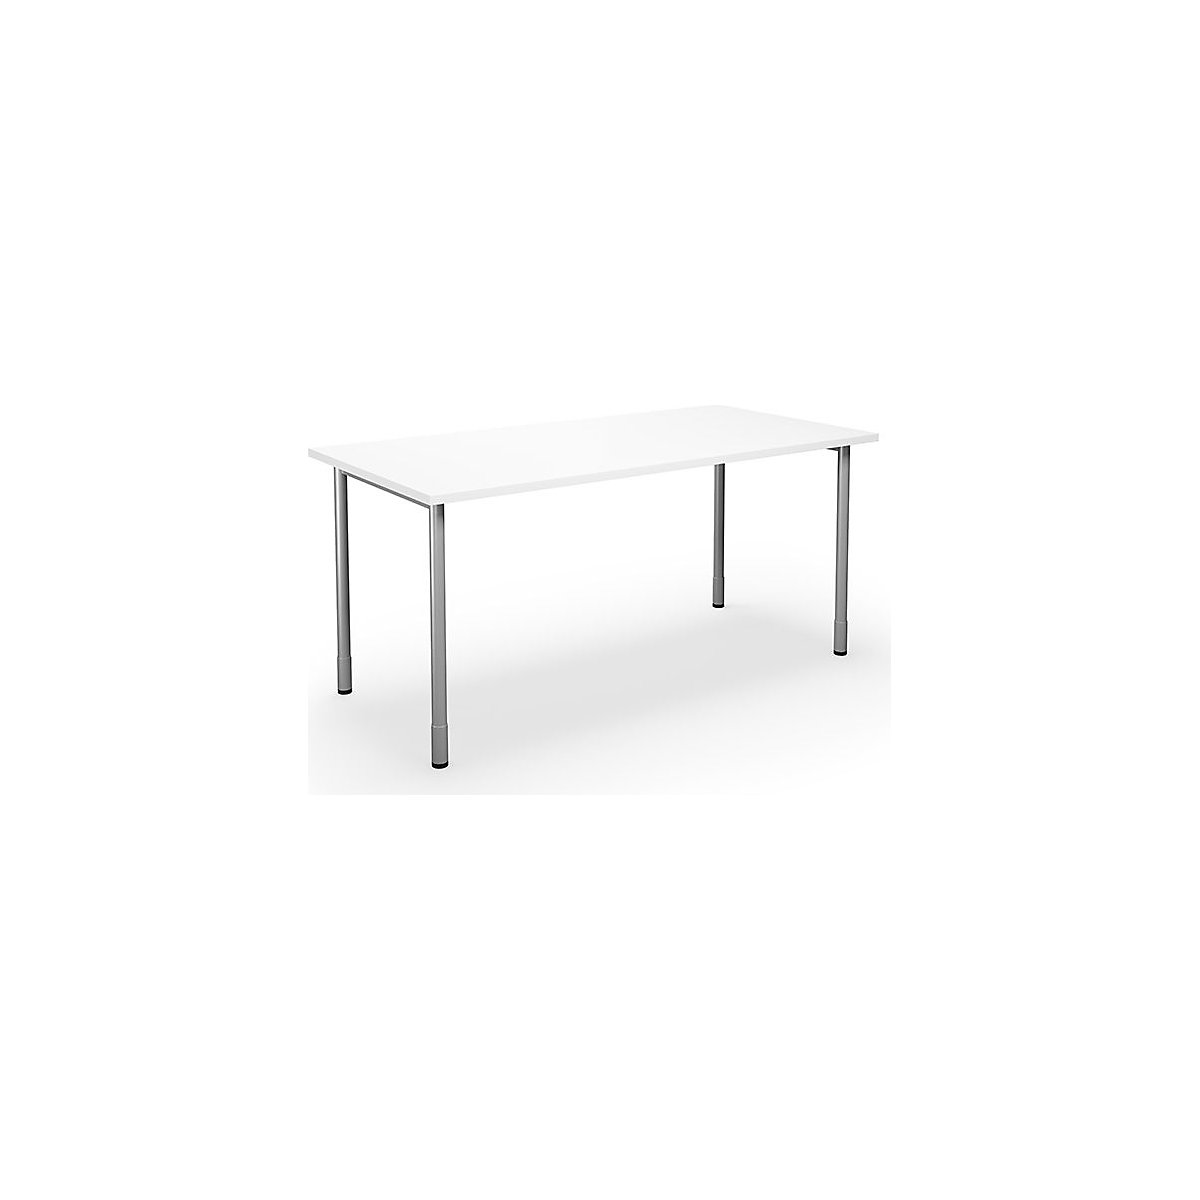 DUO-C multi-purpose desk, straight tabletop, WxD 1600 x 800 mm, white, silver-11